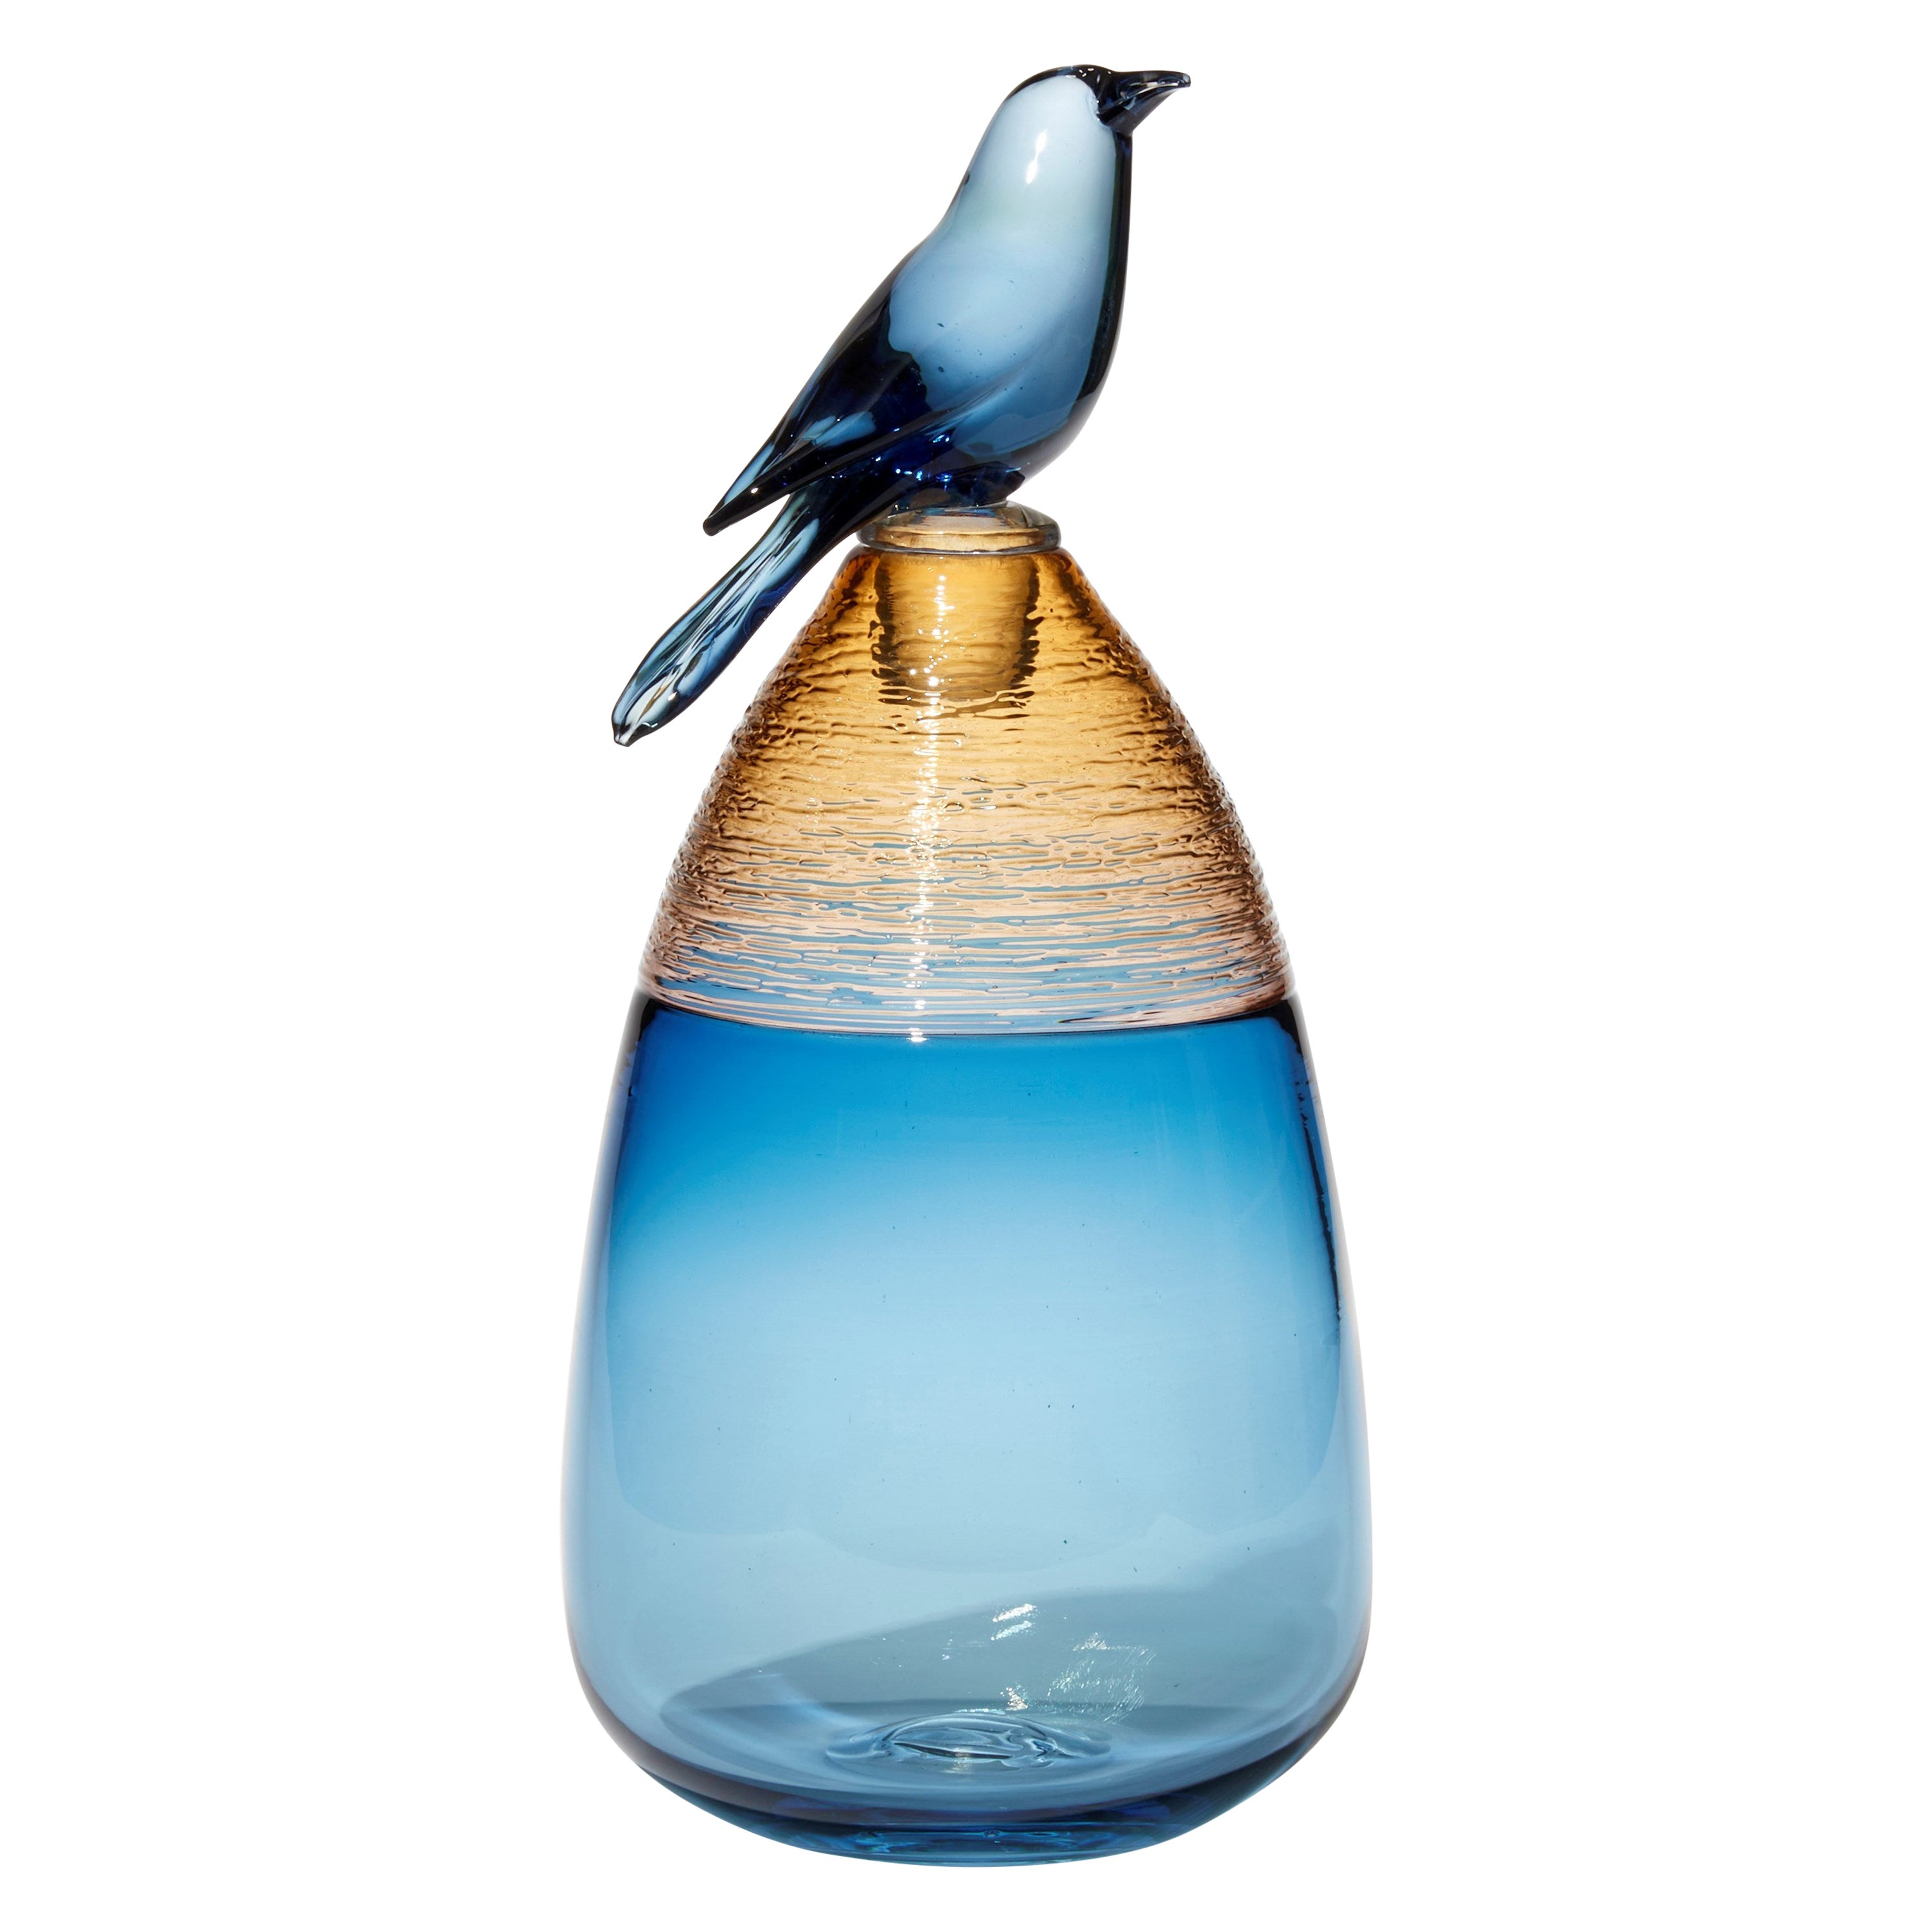 All About Birds XIX, blue & amber glass bird themed sculpture by Julie Johnson